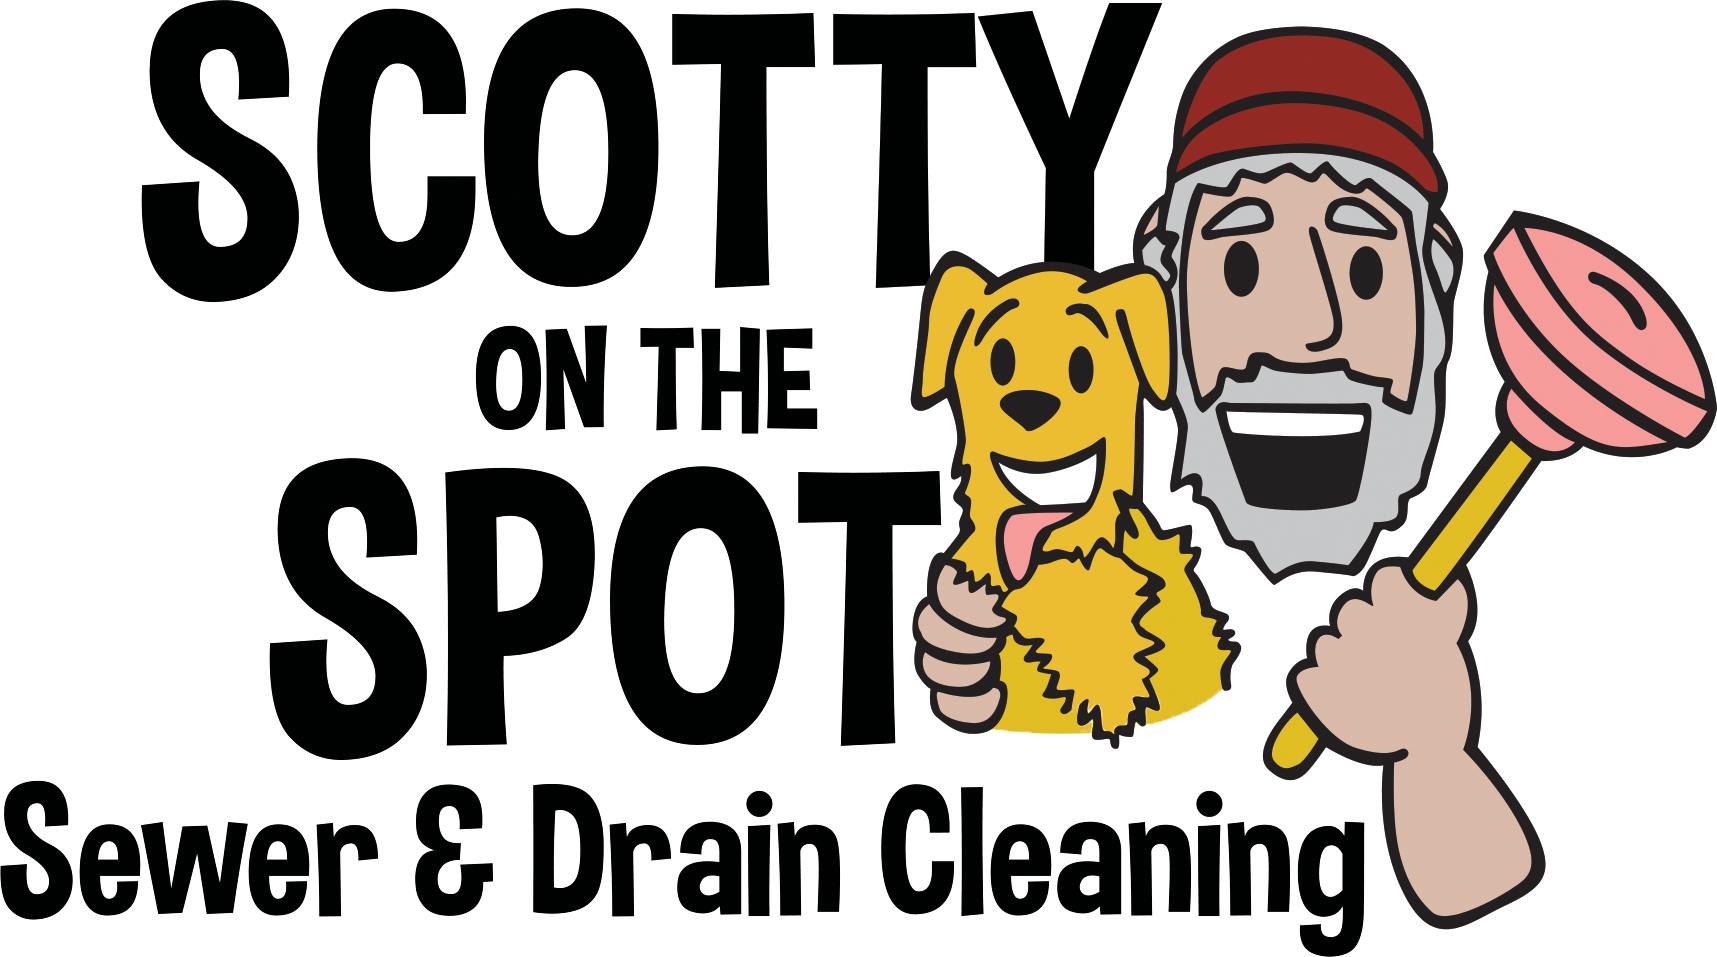 Scotty on the Spot Logo